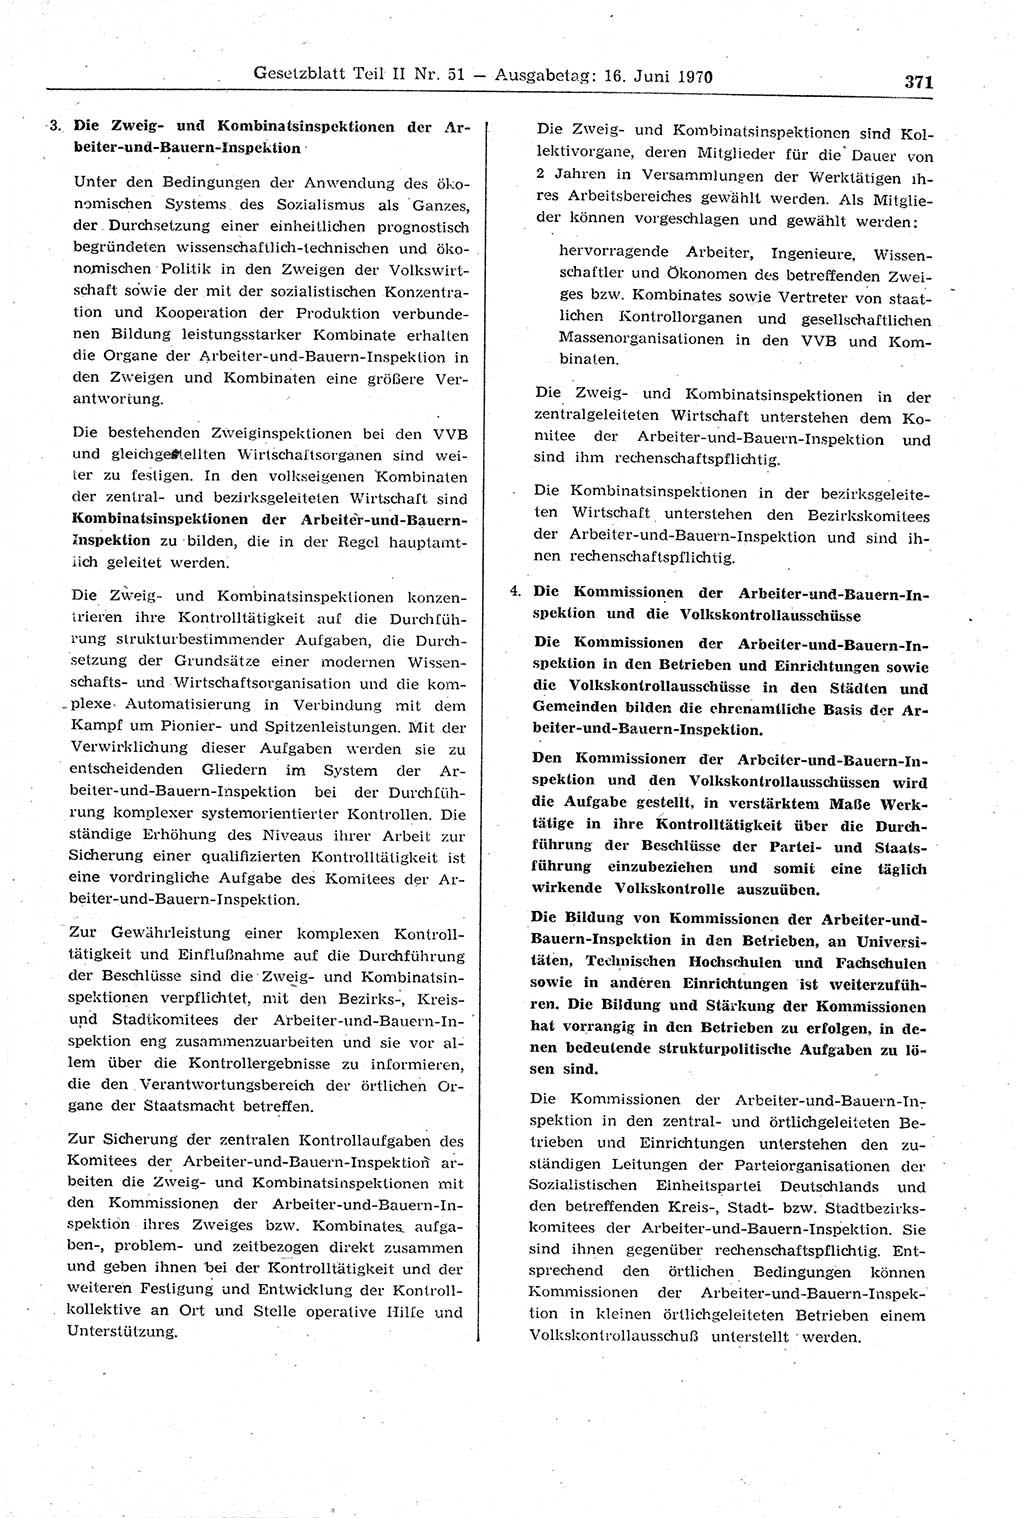 Gesetzblatt (GBl.) der Deutschen Demokratischen Republik (DDR) Teil ⅠⅠ 1970, Seite 371 (GBl. DDR ⅠⅠ 1970, S. 371)